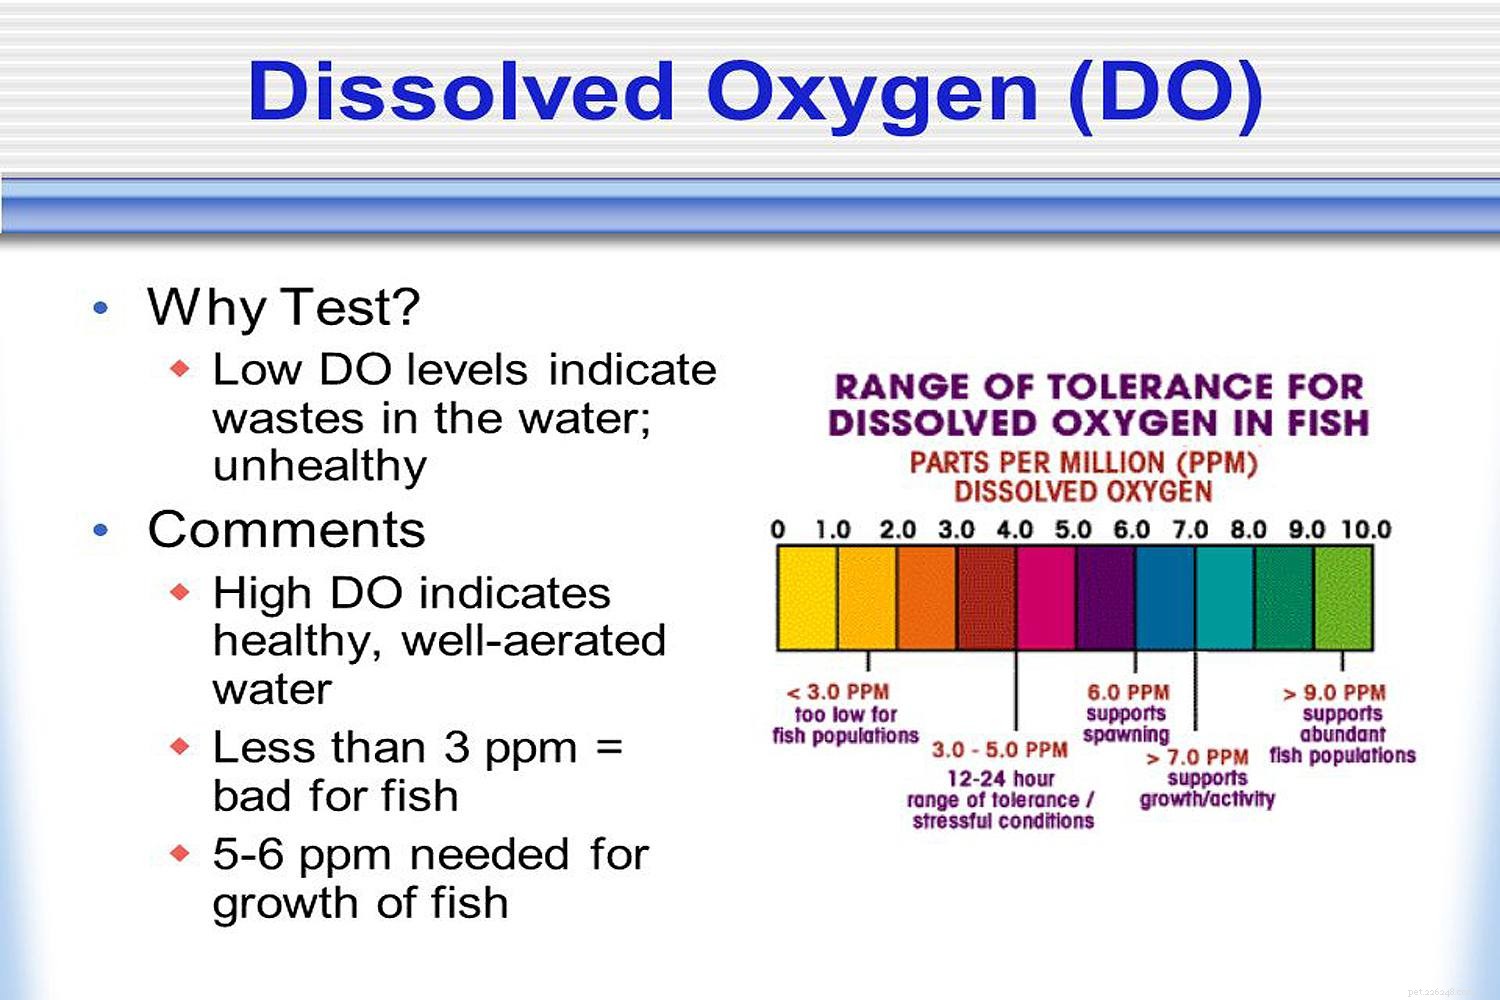 Nuoto, equilibrio, ossigeno e consumo di cibo nel pesce